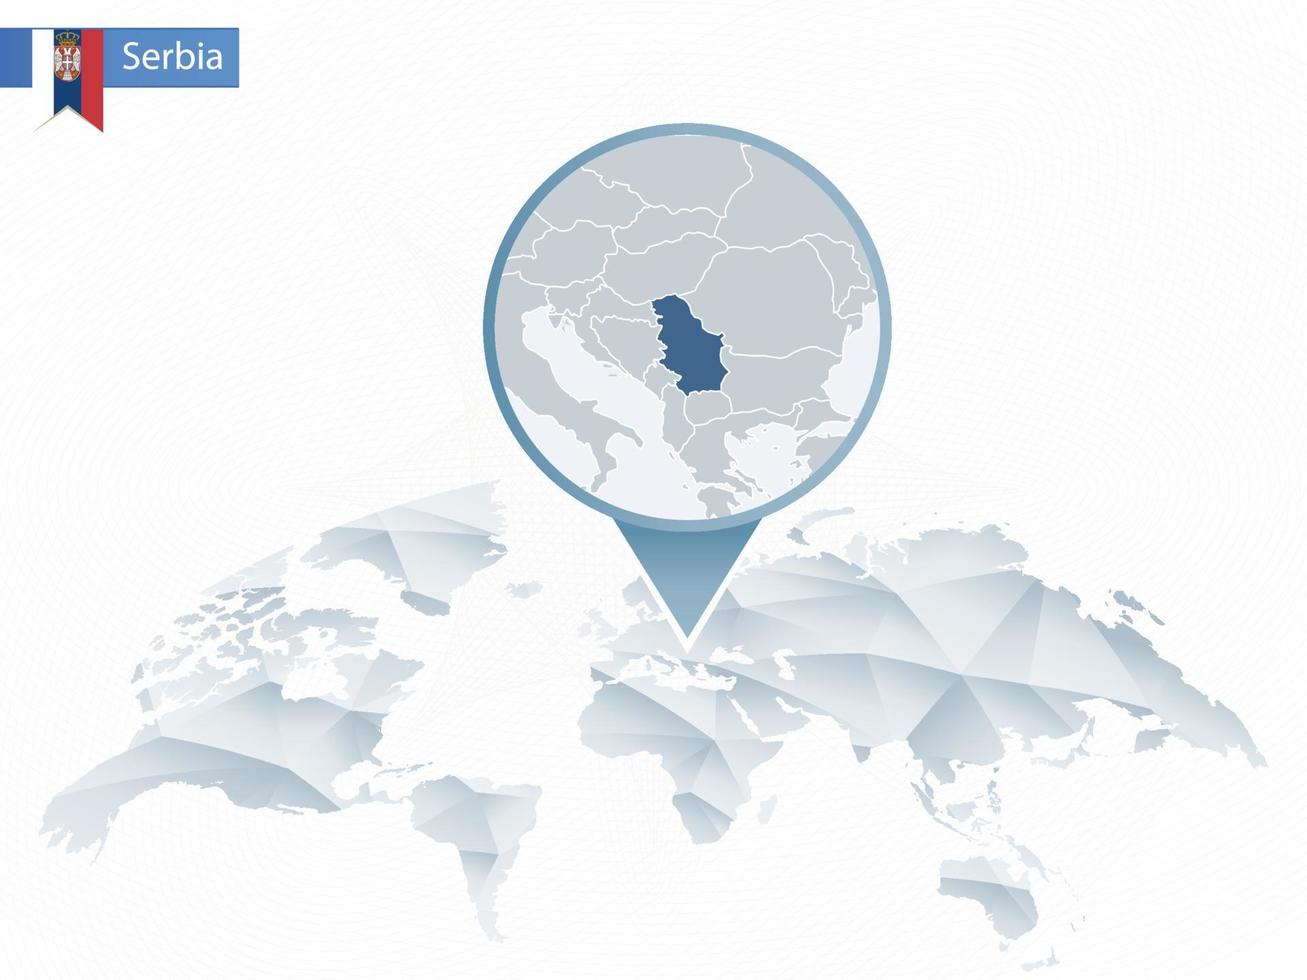 mapa del mundo redondeado abstracto con mapa de serbia detallado anclado. vector